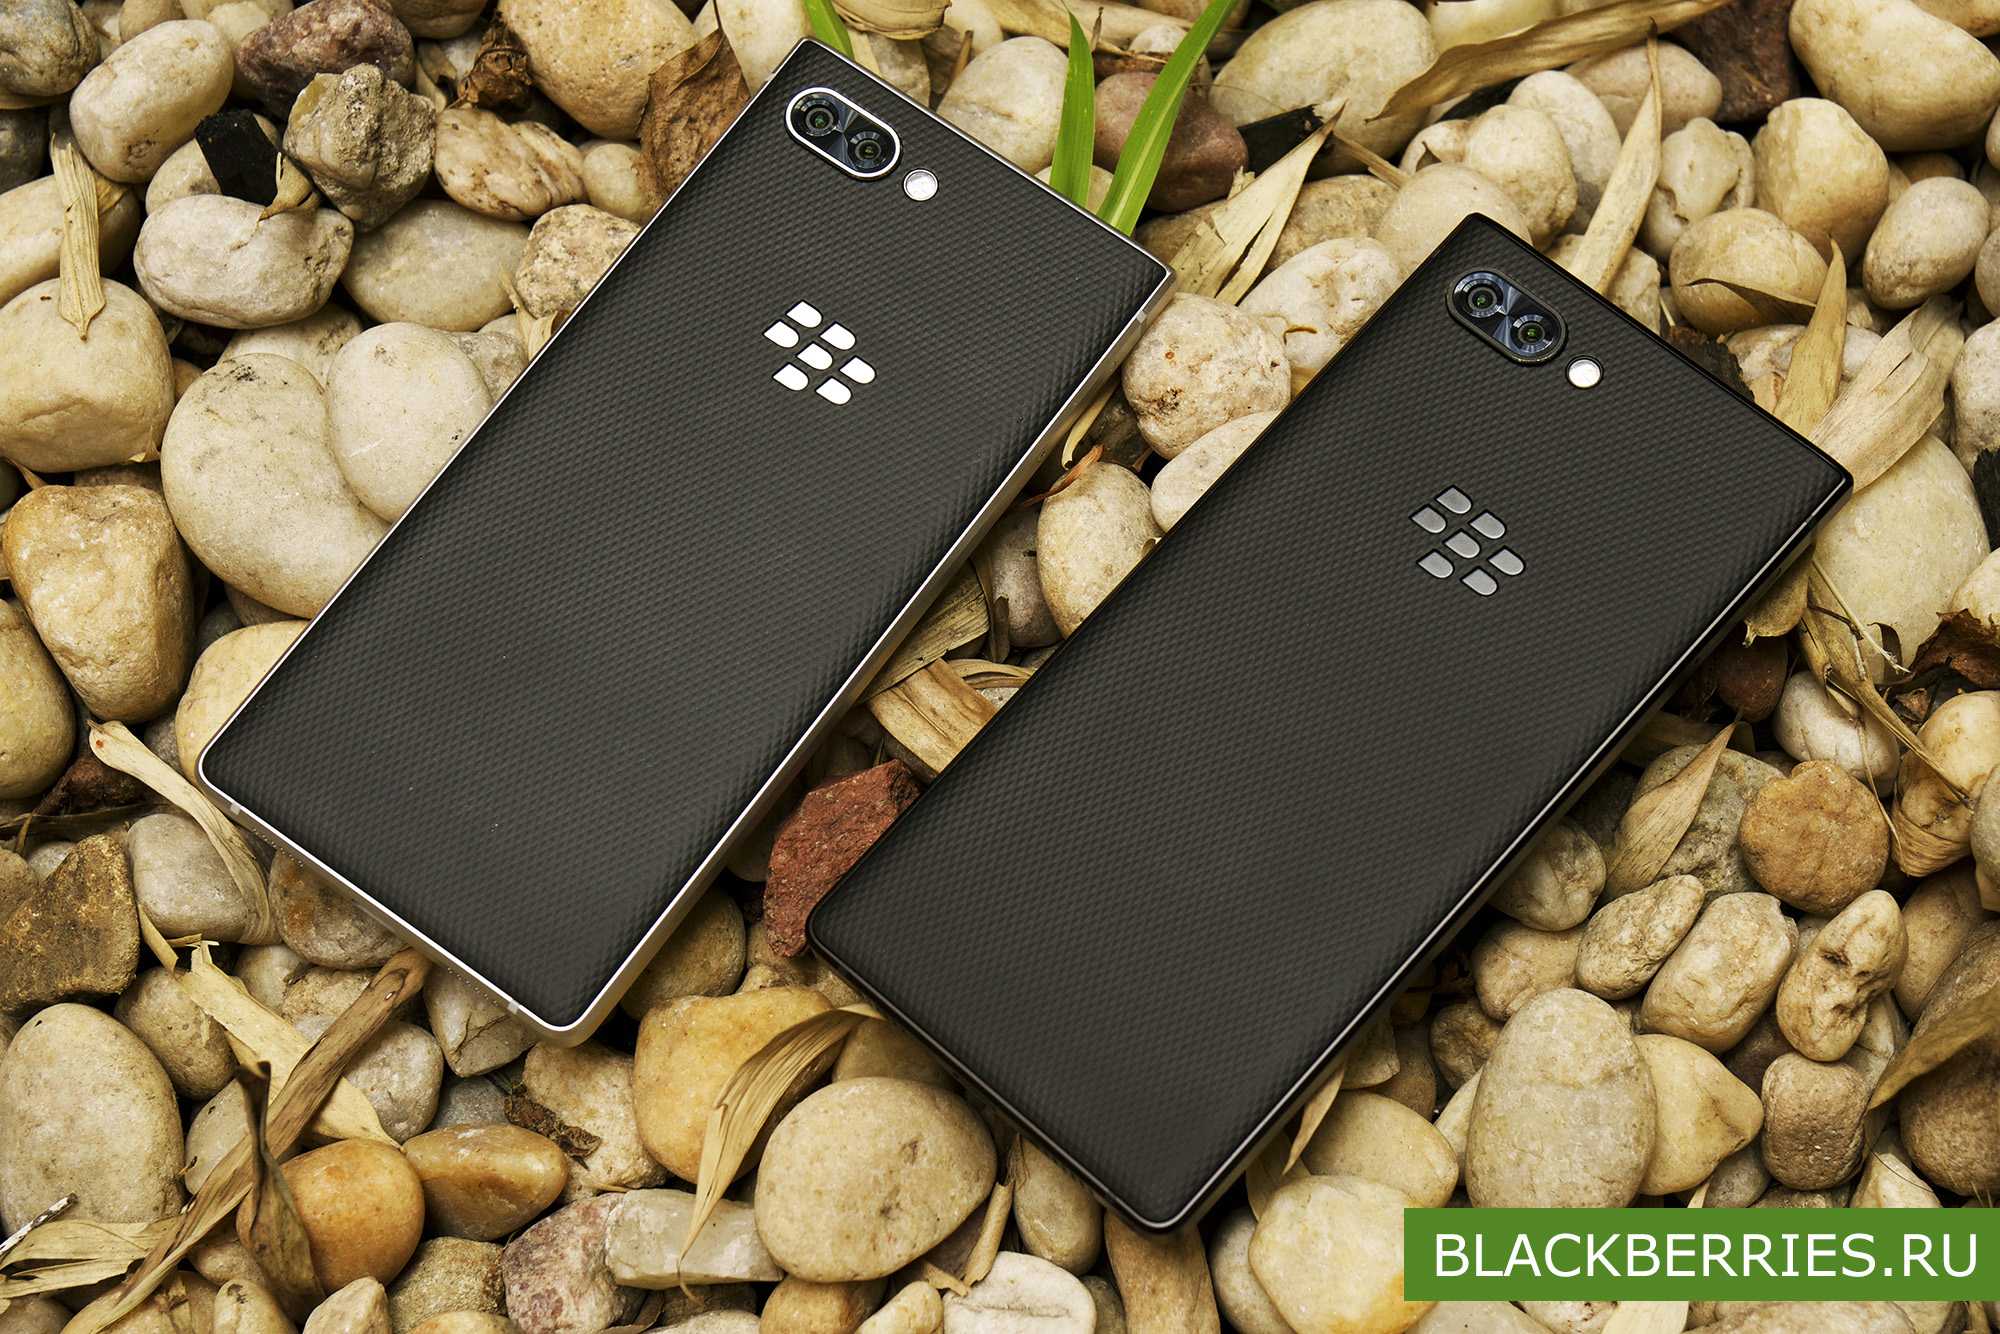 BlackBerry KEYone - короткий но максимально информативный обзор Для большего удобства добавлены характеристики отзывы и видео